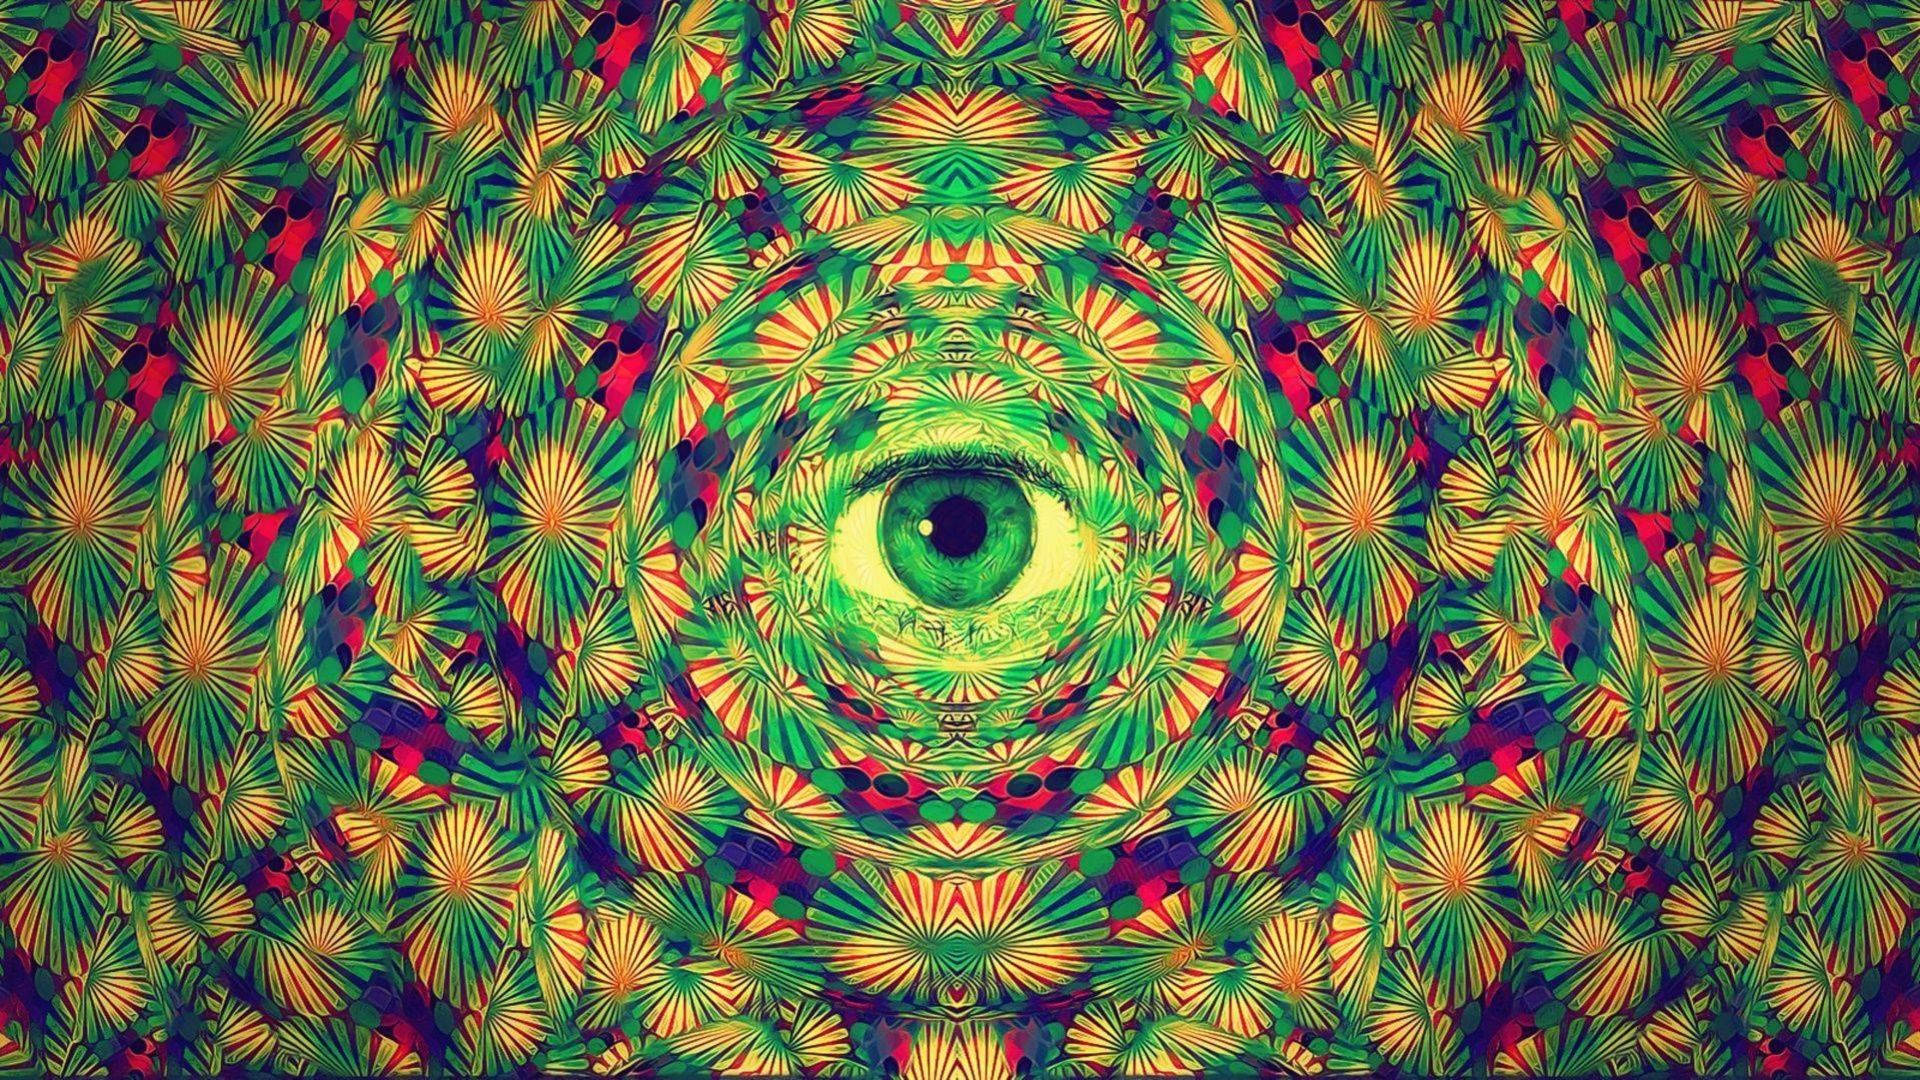 Starring Eyes In A Tie Dye Pattern Background